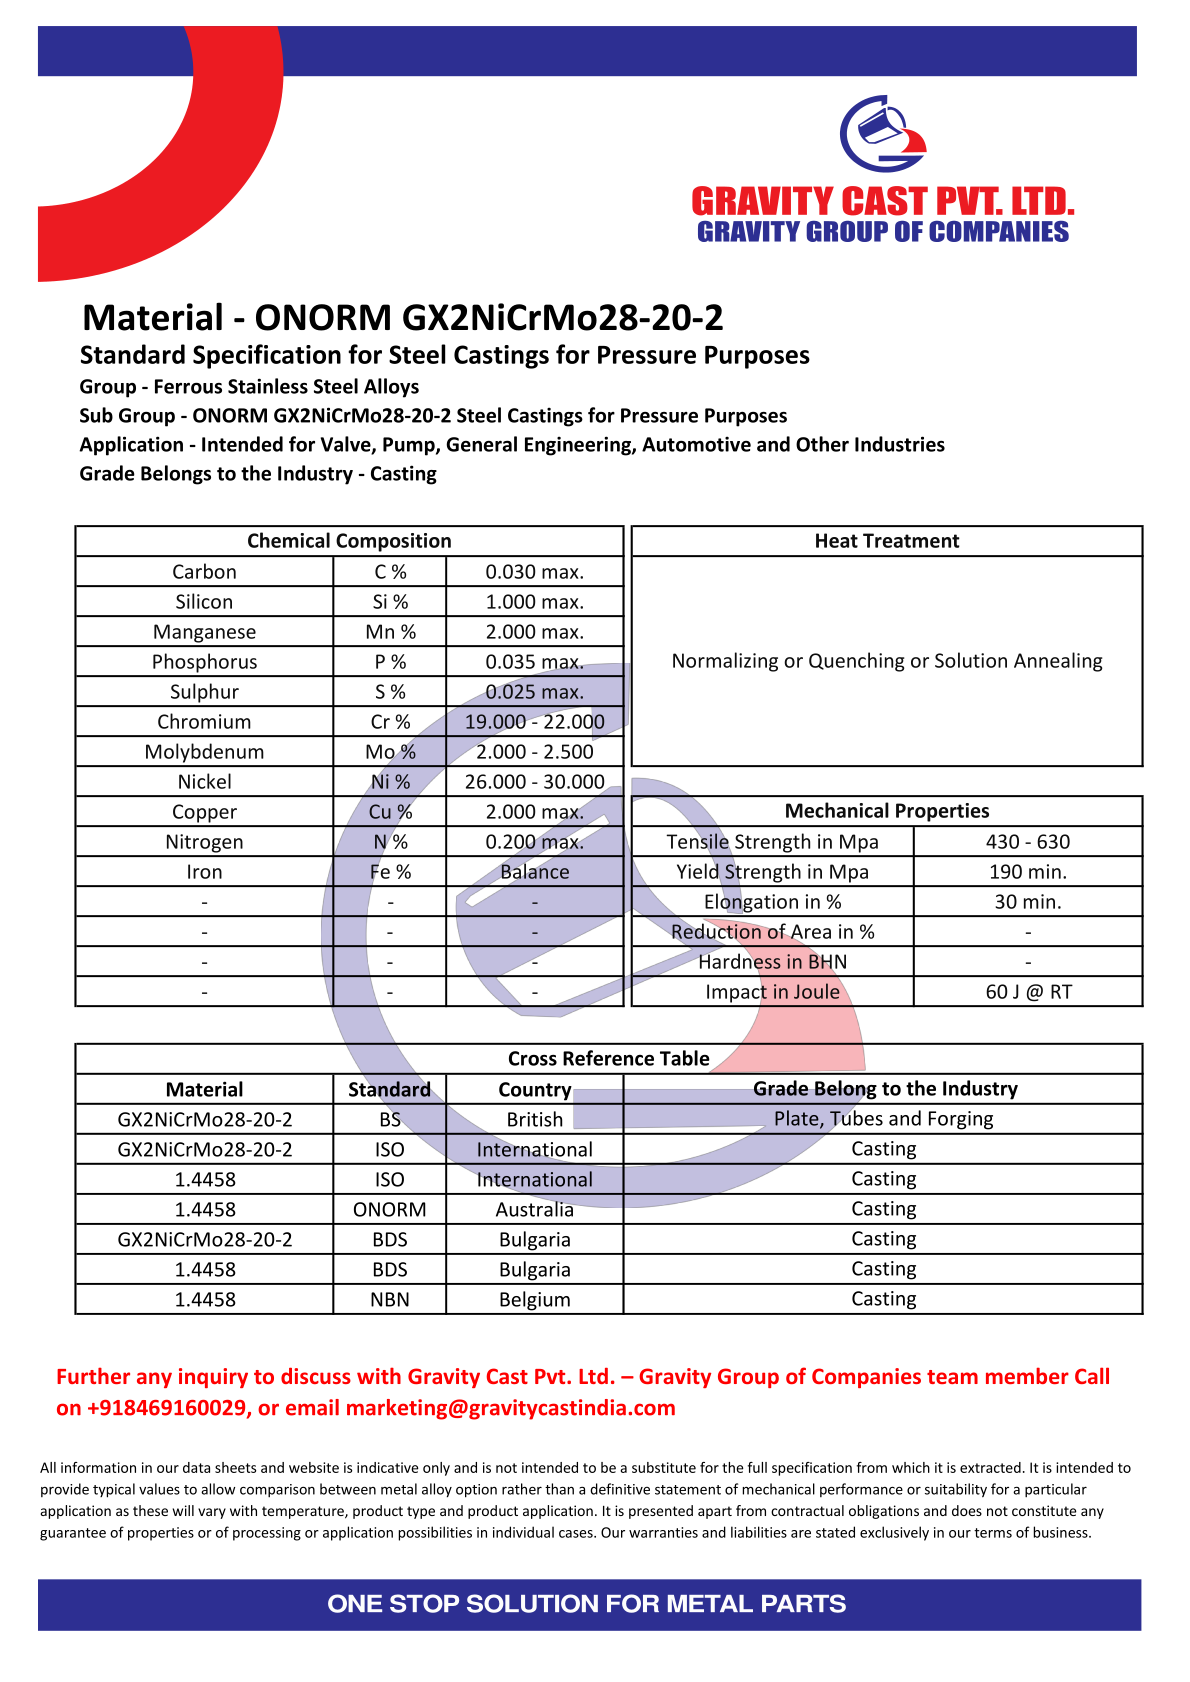 ONORM GX2NiCrMo28-20-2.pdf